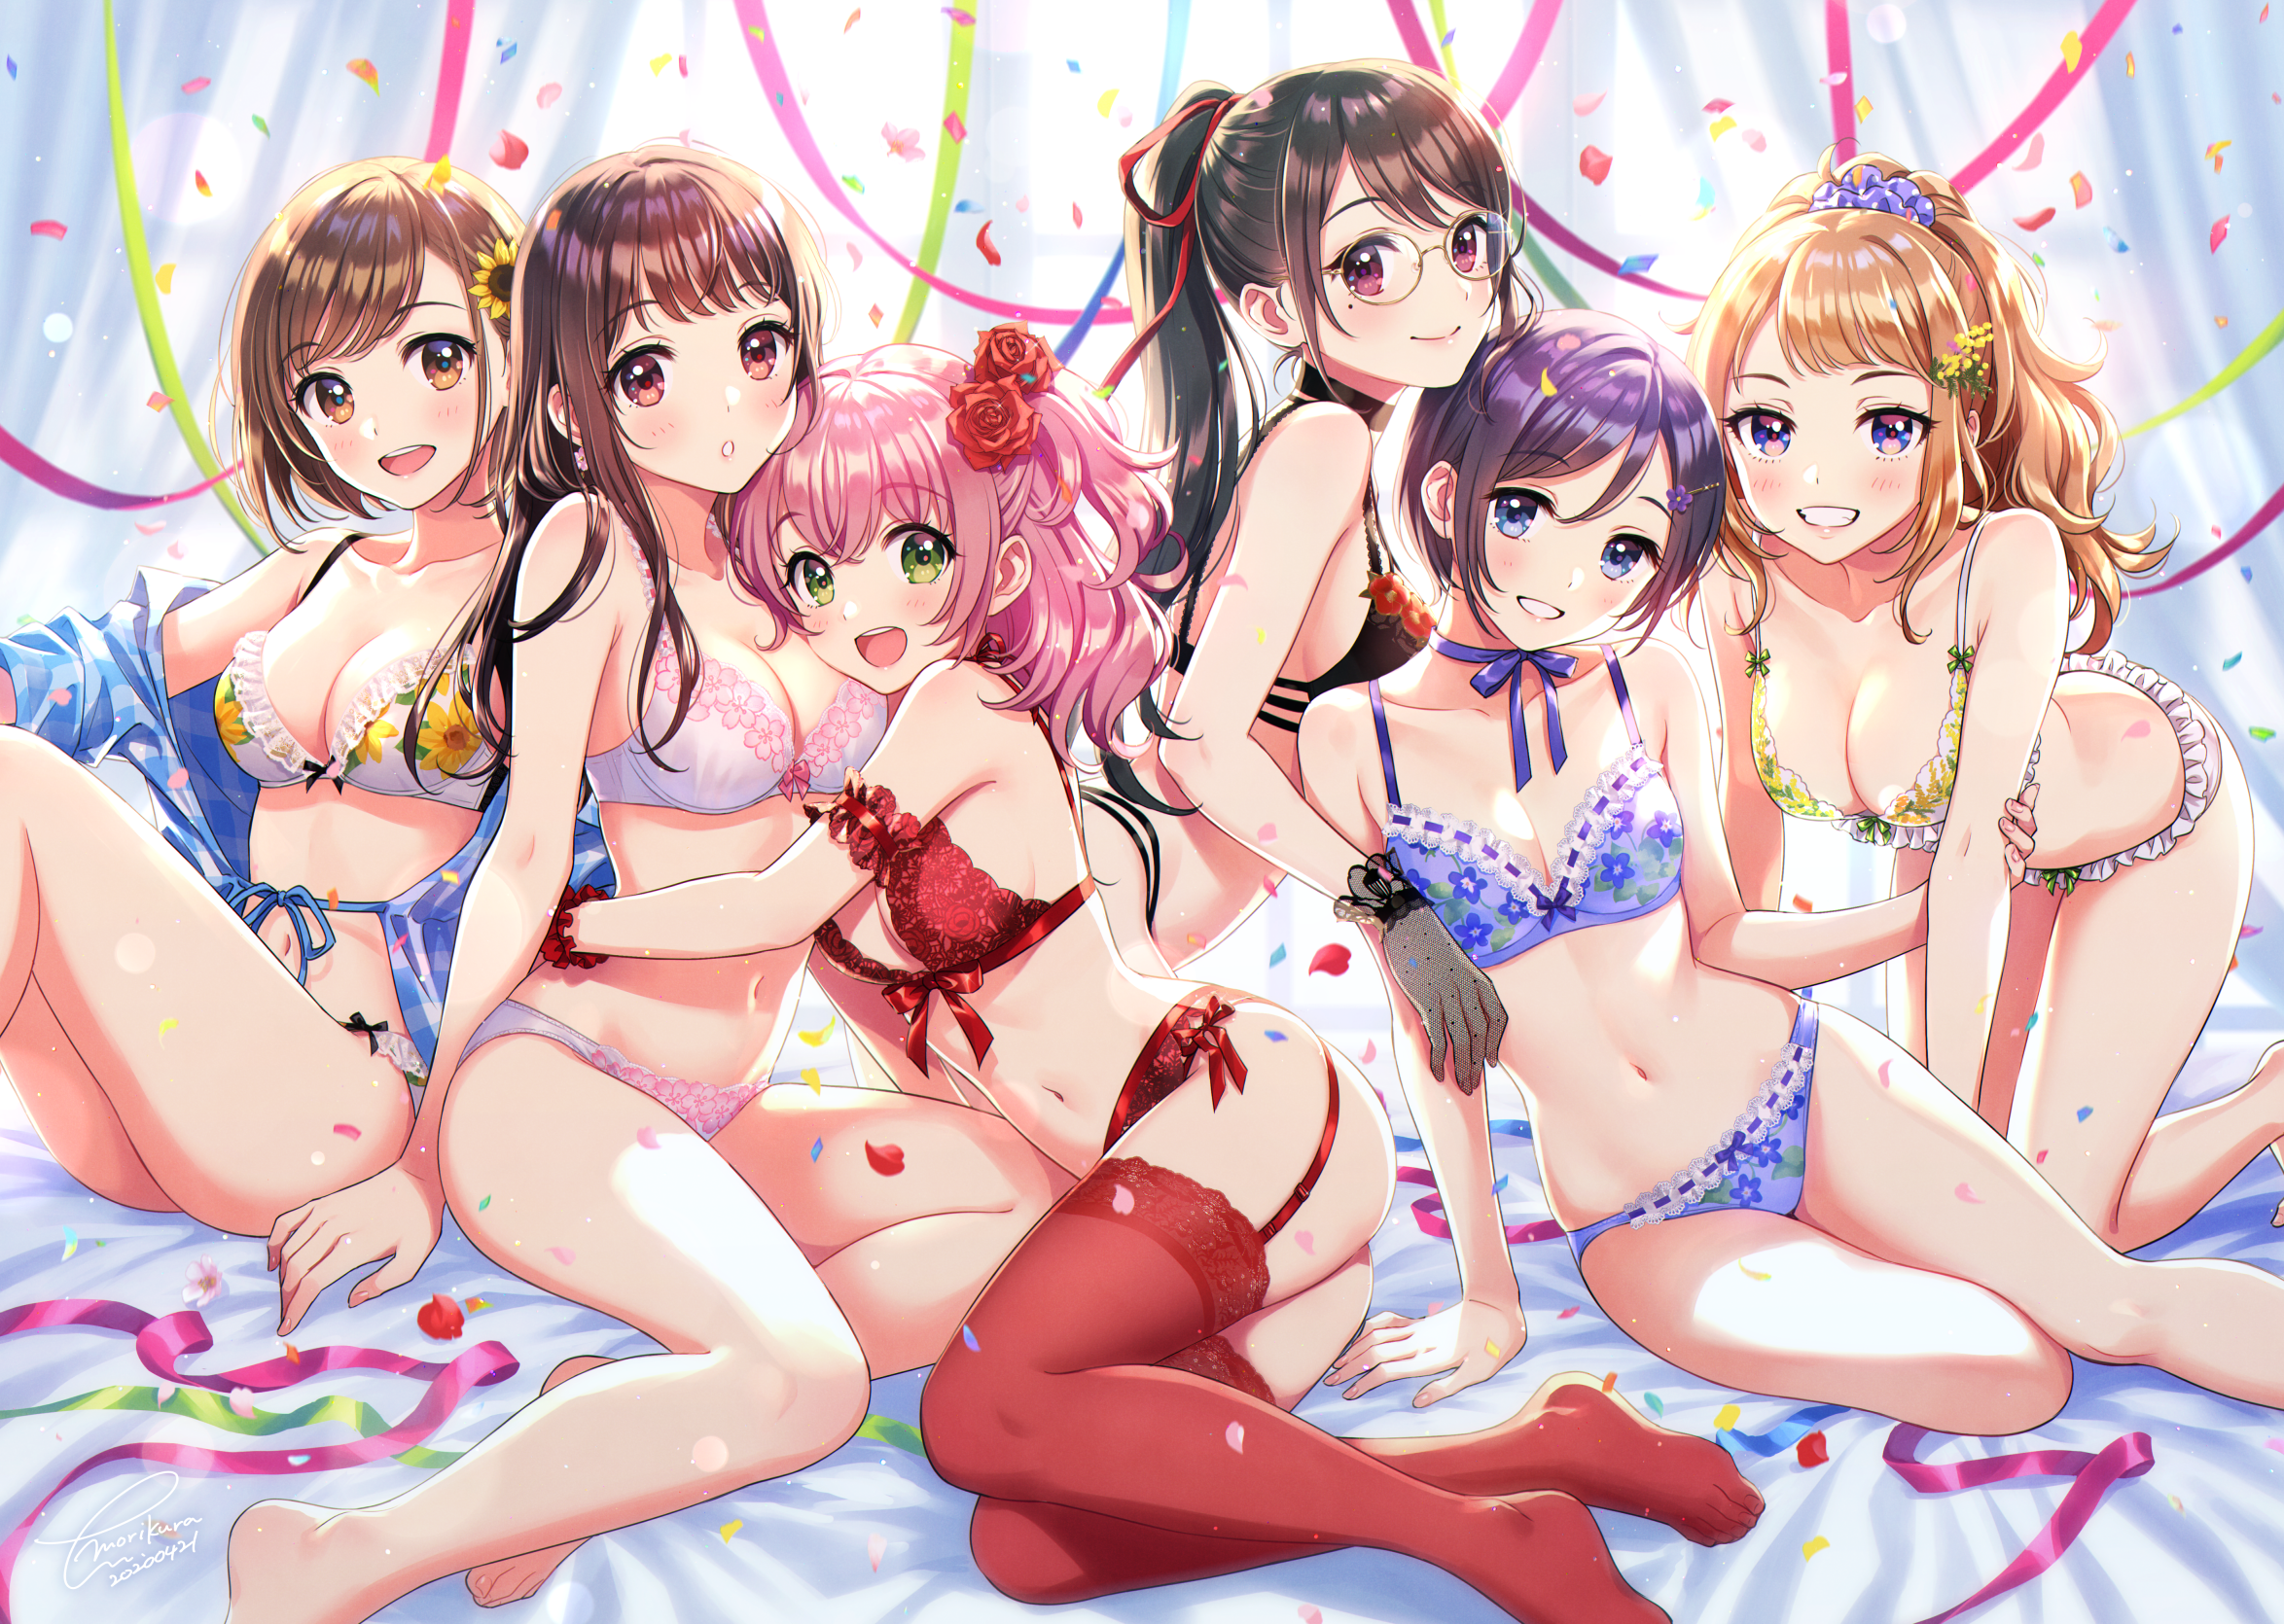 Anime 2348x1670 anime anime girls digital art artwork 2D portrait Morikura En group of women underwear cleavage looking at viewer